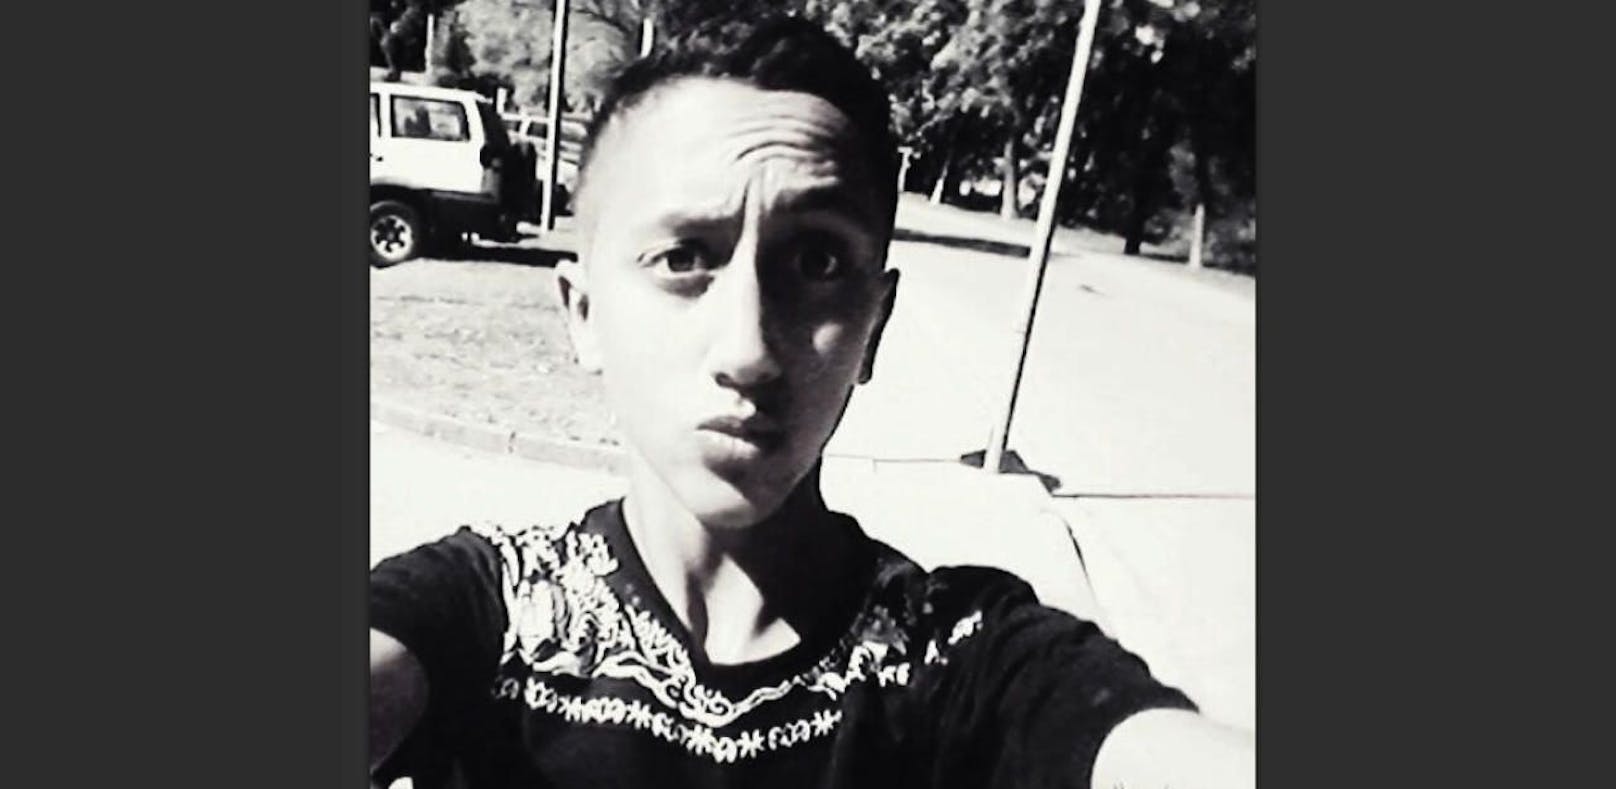 Das Selfie postete der mutmaßliche Terrorist auf Kiwi